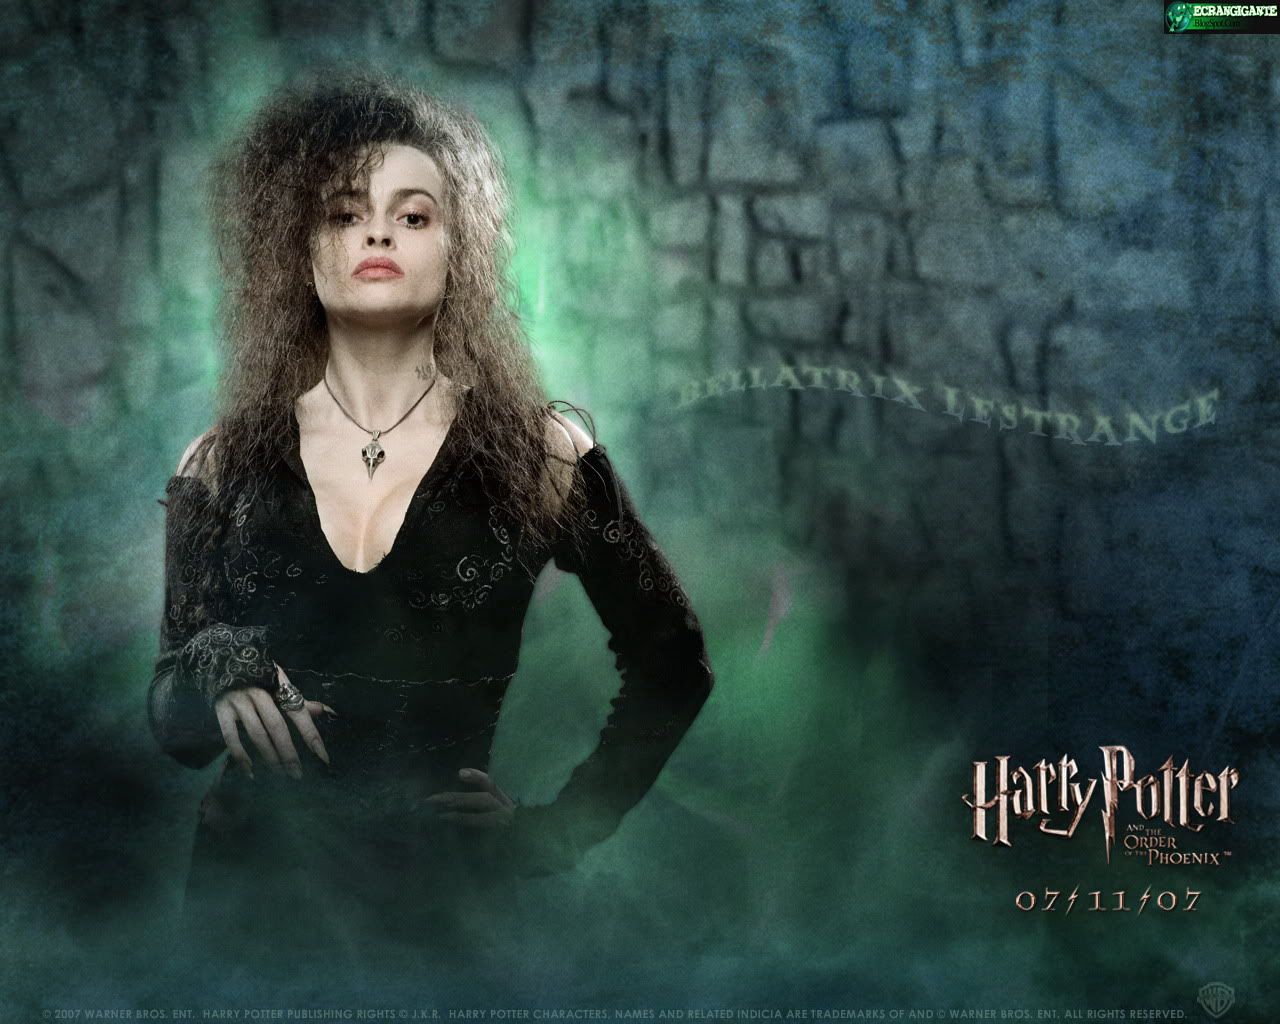 EcranGigante - Posters, Wallpapers & Trailers de Filmes.: Harry Potter e a Ordem da ...